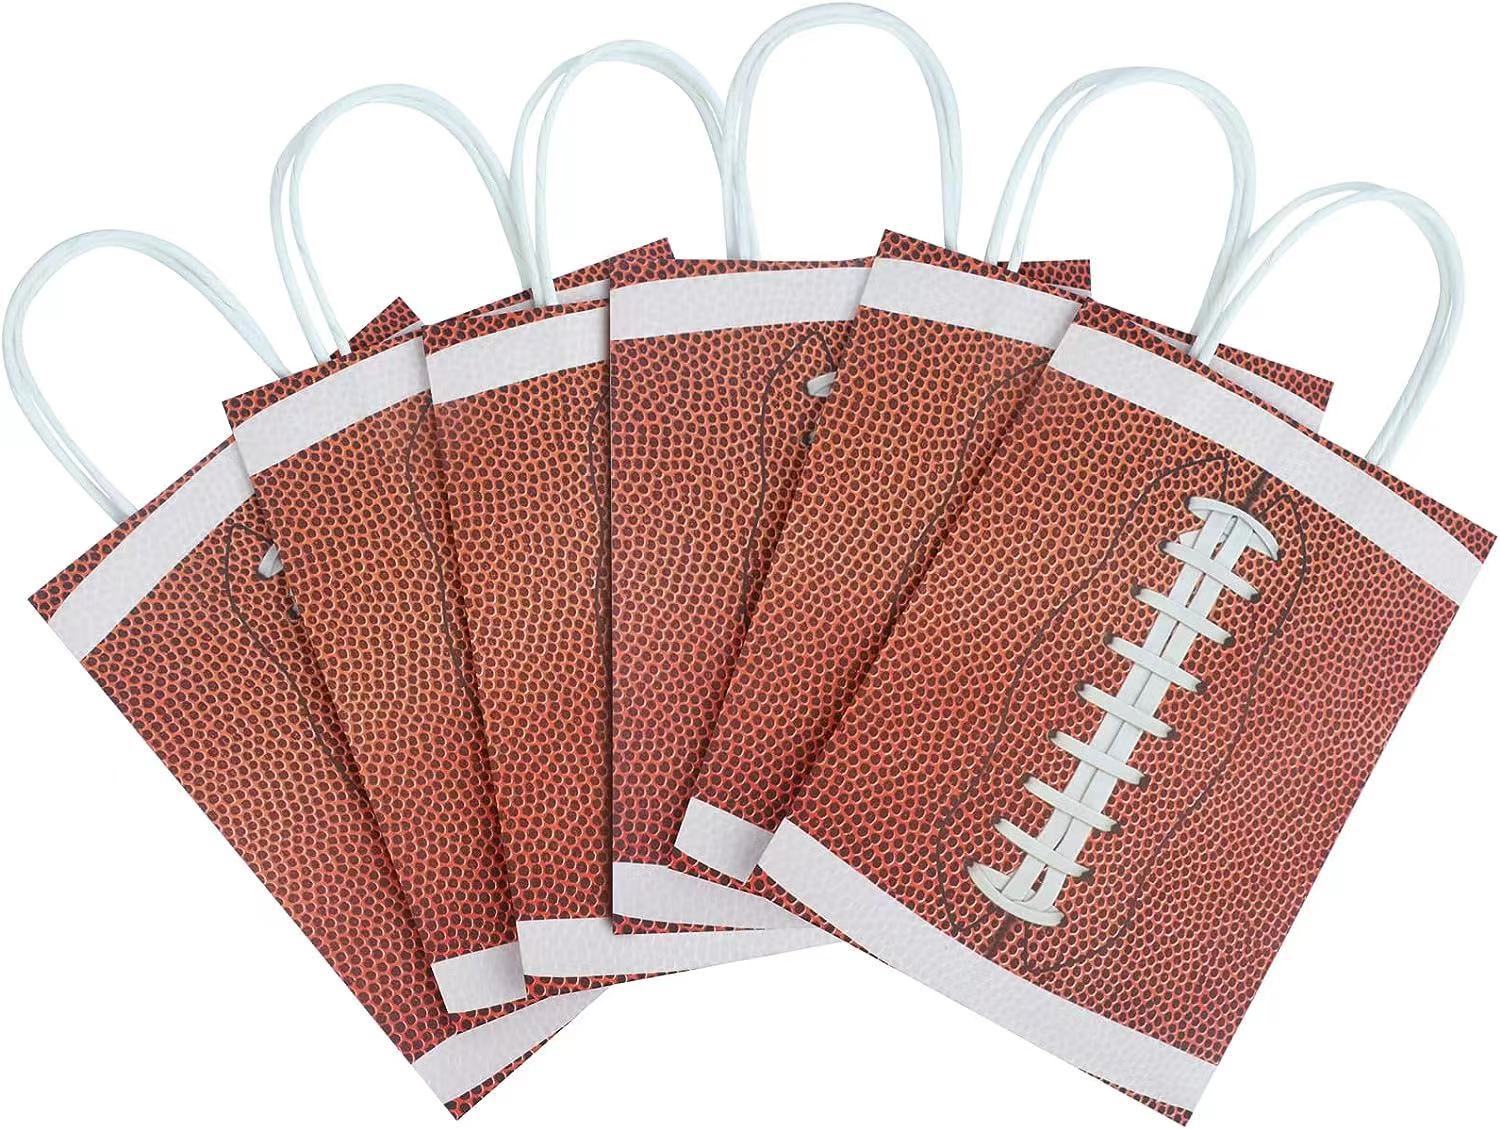 Borsa tote a tema rugby borsa da regalo per feste con fondo quadrato colorato in carta kraft bianca